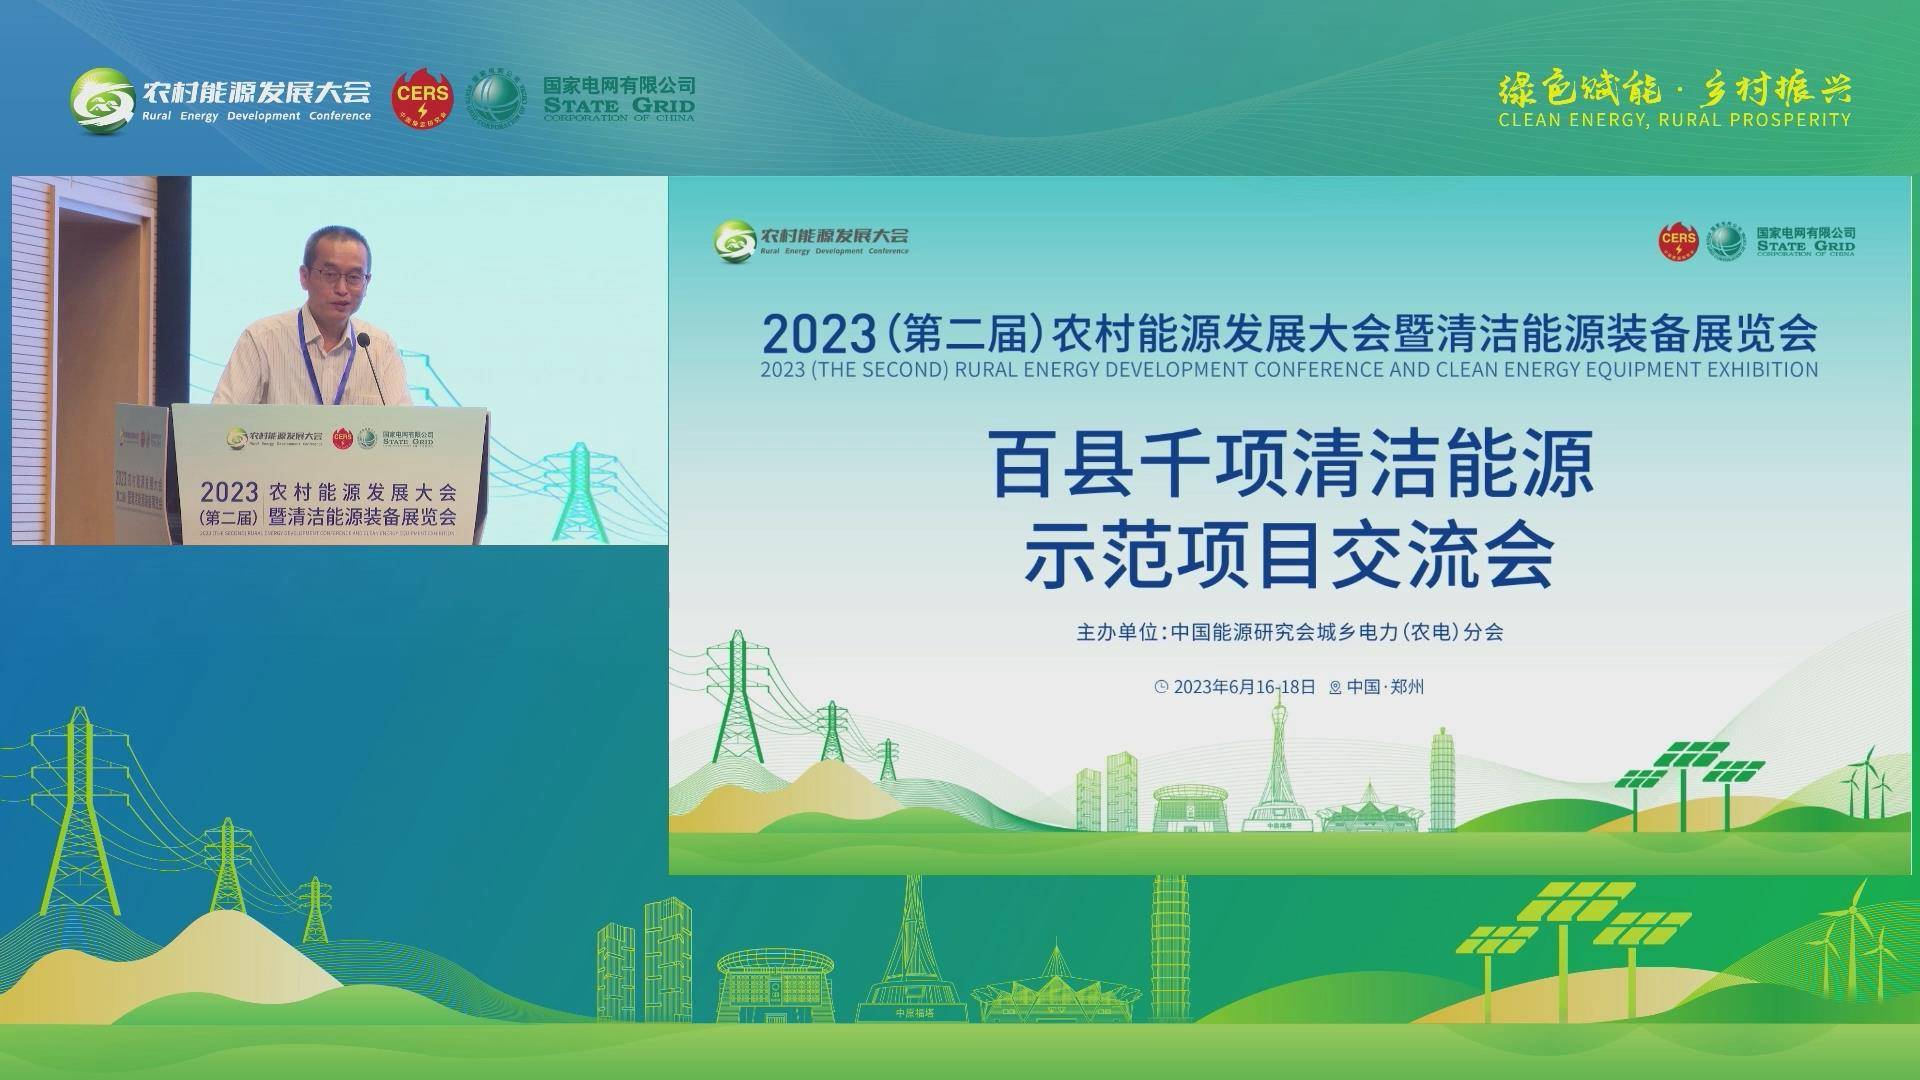 2023（第二届）农村能源发展大会百县千项清洁能源示范项目交流会开场及致辞